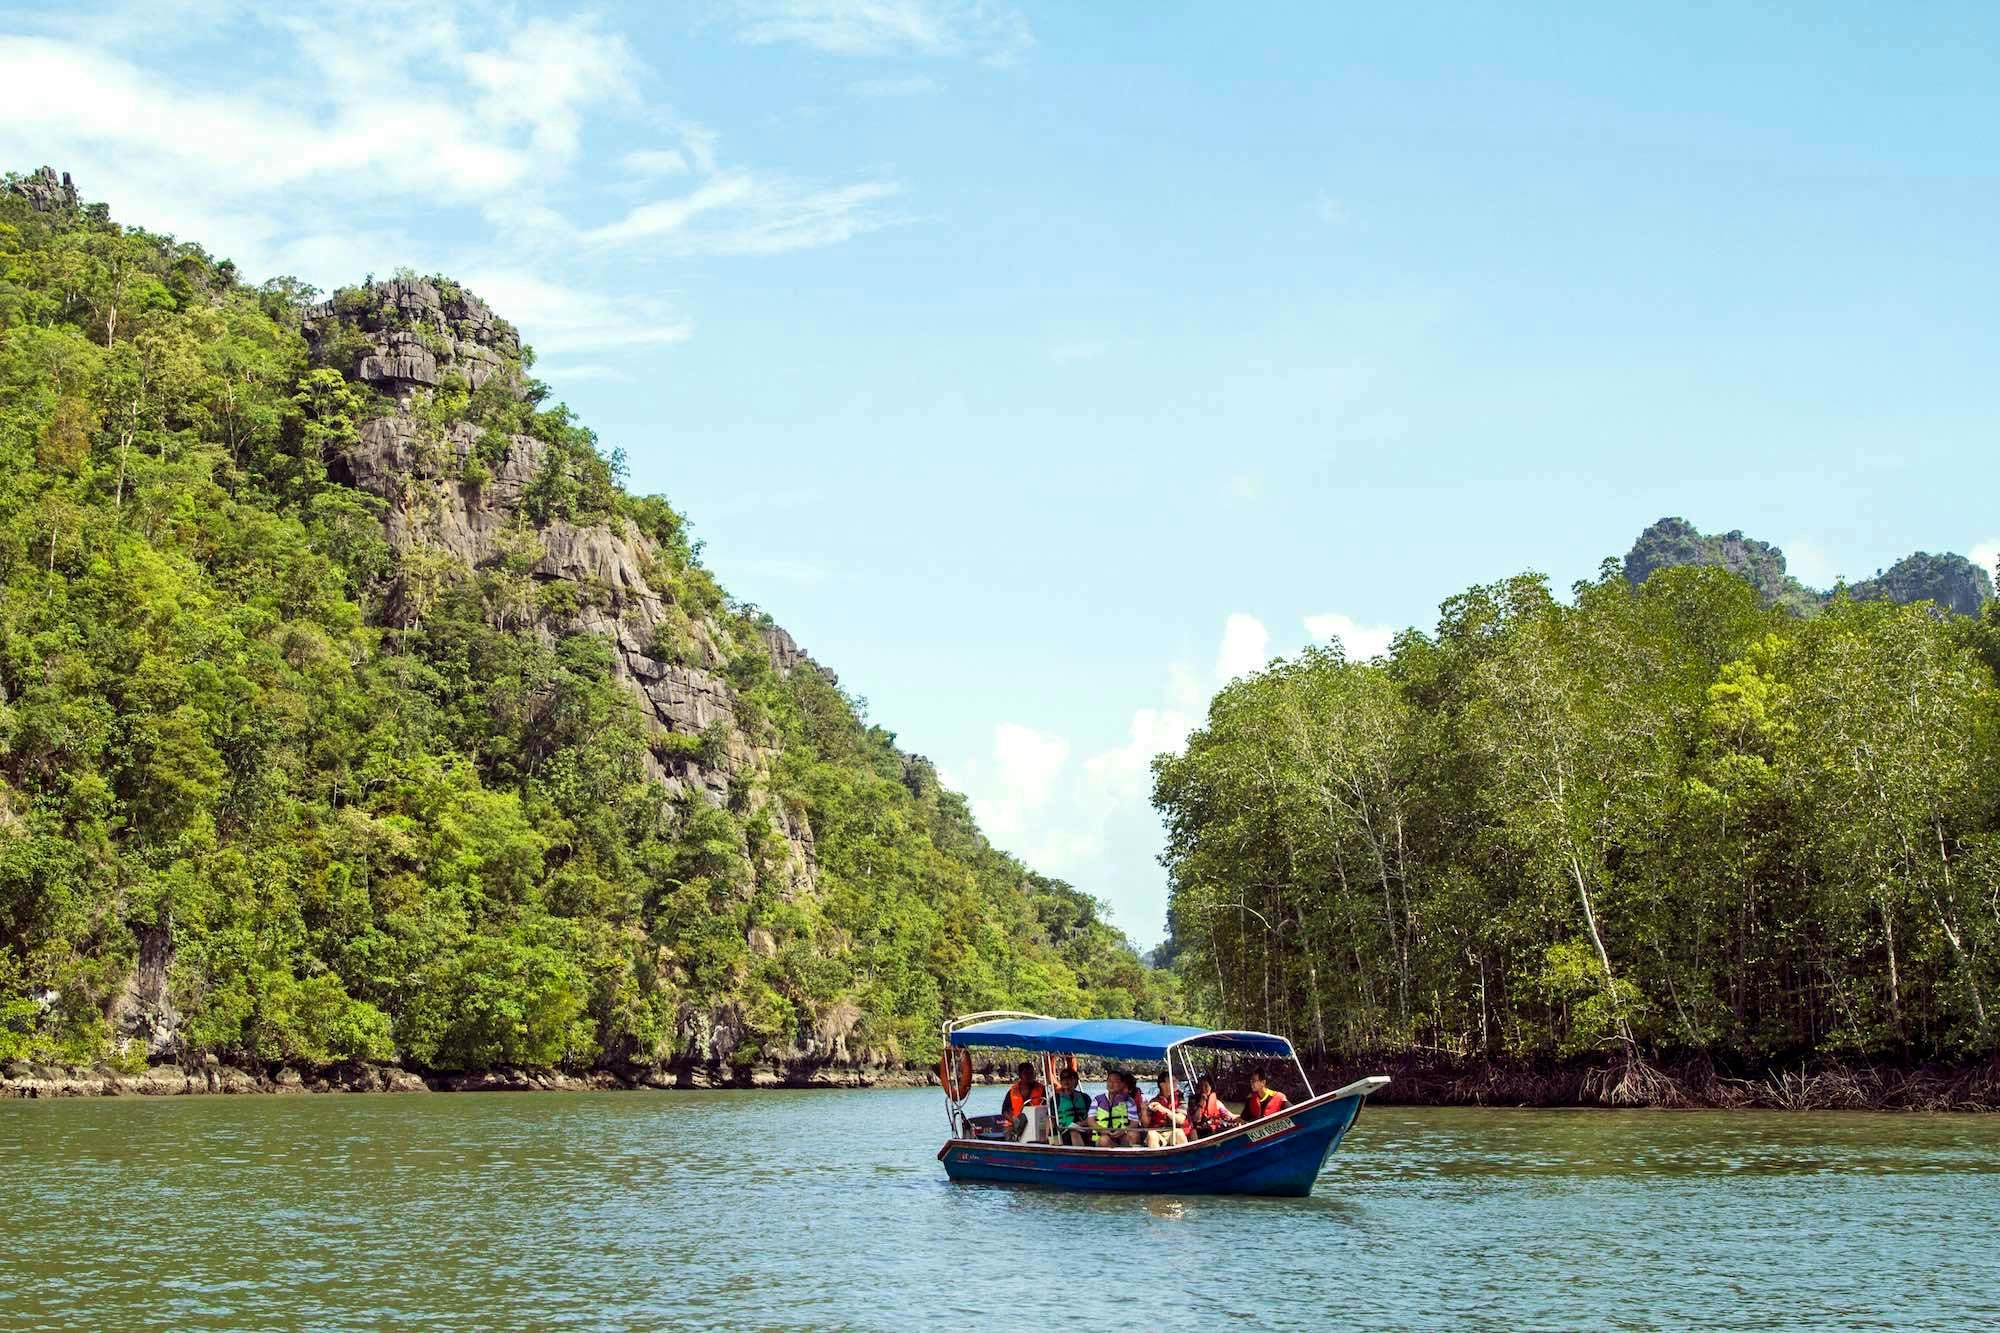 Halbtägiges Erlebnis einer Mangroven-Flusskreuzfahrt auf Langkawi